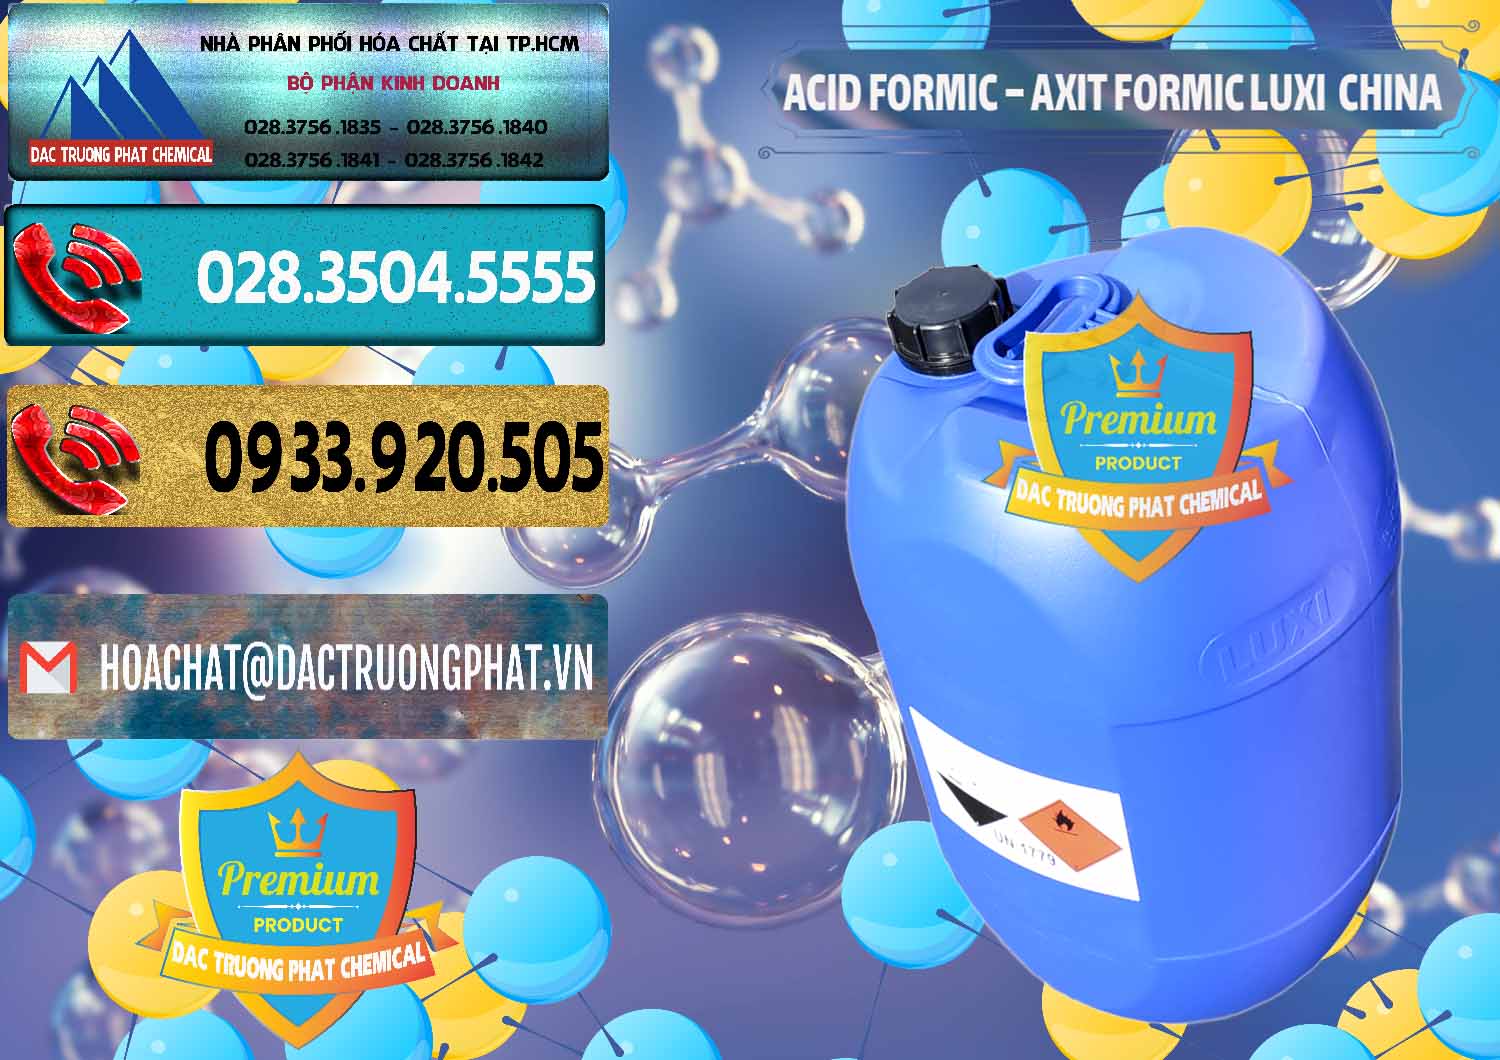 Kinh doanh _ bán Acid Formic - Axit Formic Luxi Trung Quốc China - 0029 - Công ty chuyên nhập khẩu _ phân phối hóa chất tại TP.HCM - hoachatdetnhuom.com